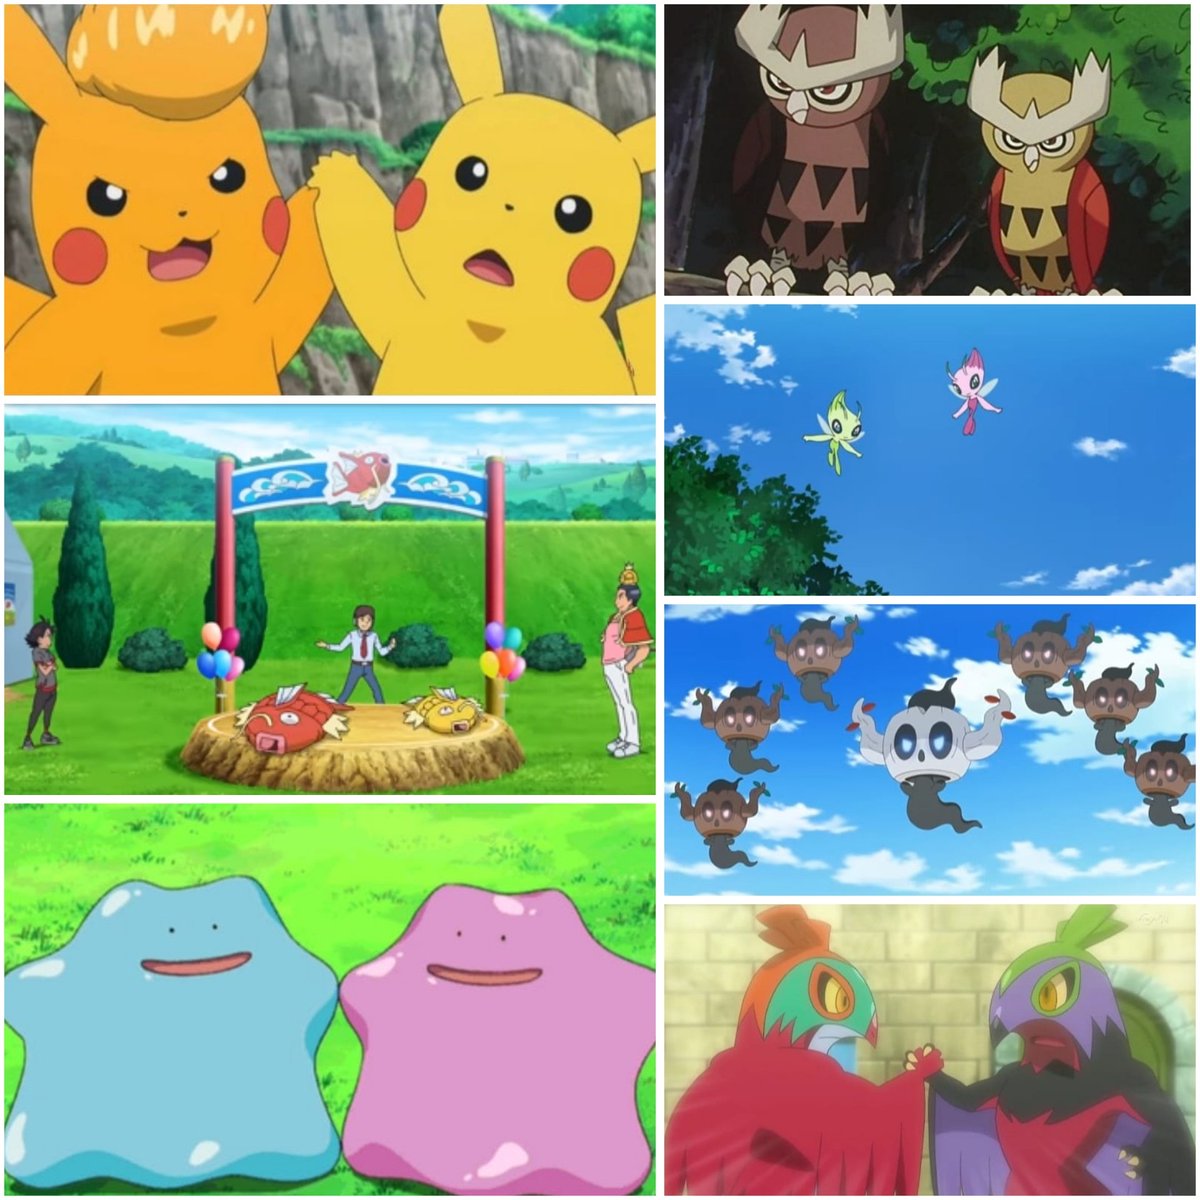 When Pokémon meet their shiny forms✨ #アニポケ #anipoke #Pokemon